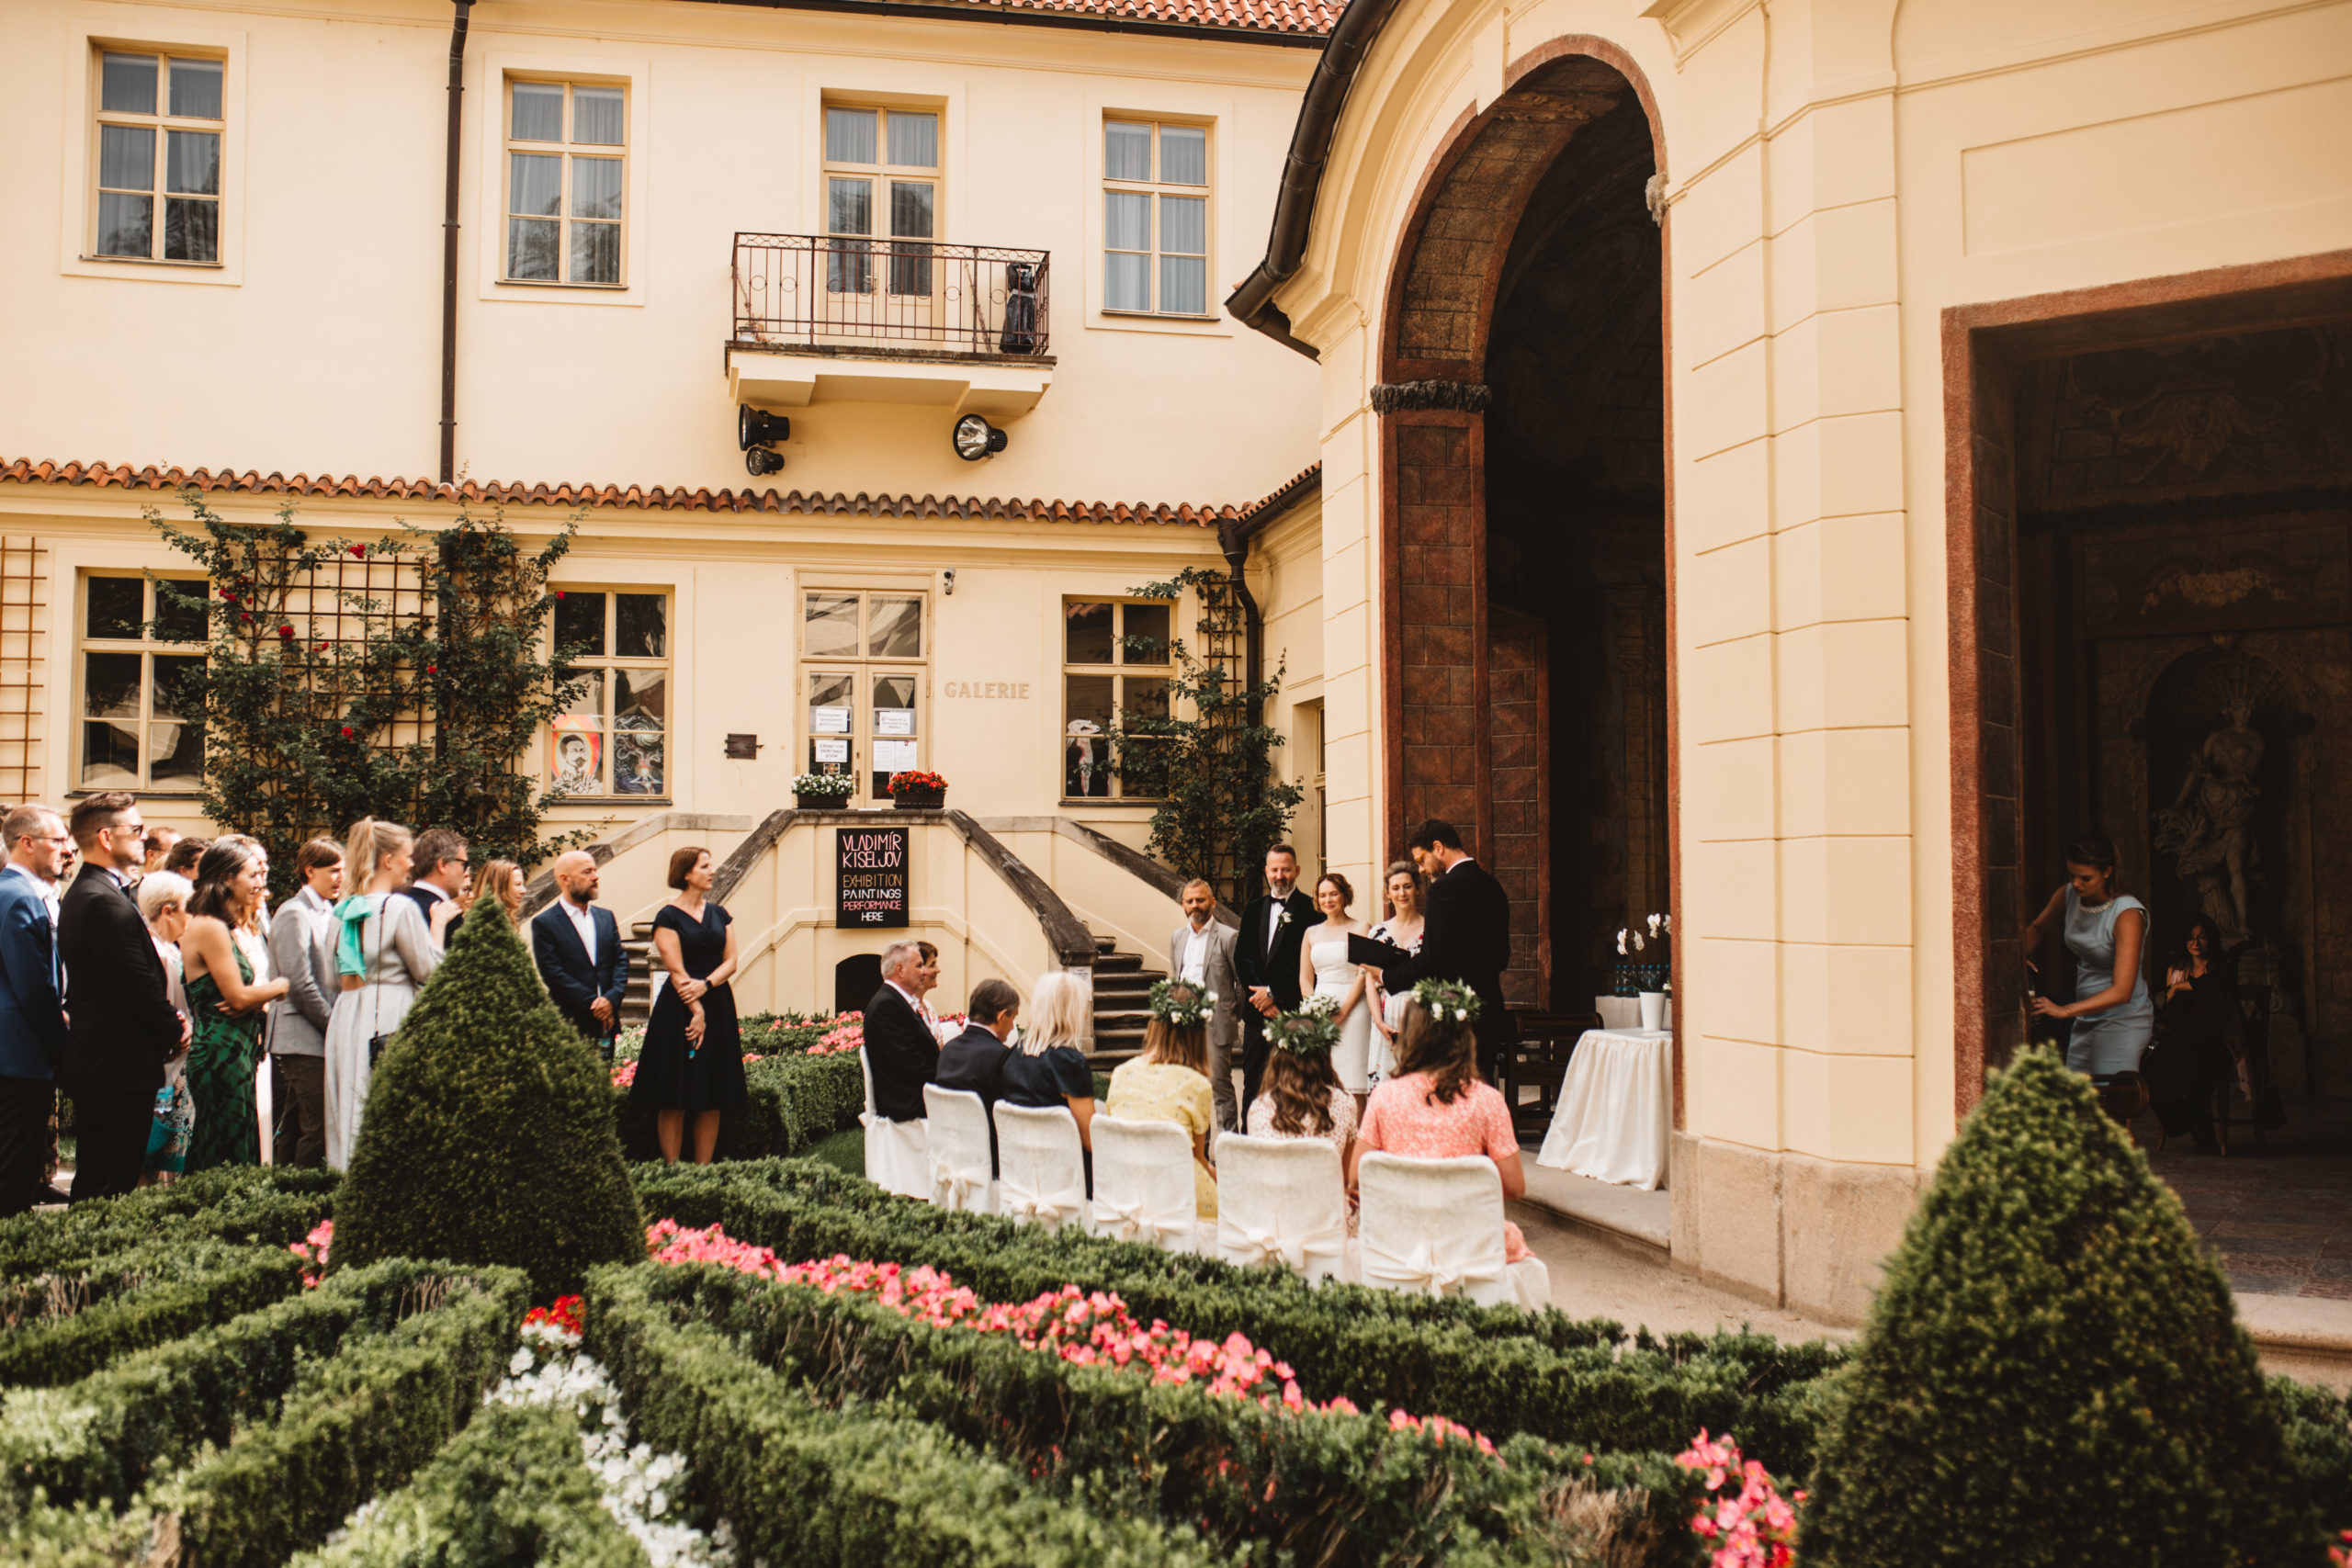 Vrtba Gardens & Werich Villa - Weddings in Prague - Julie May